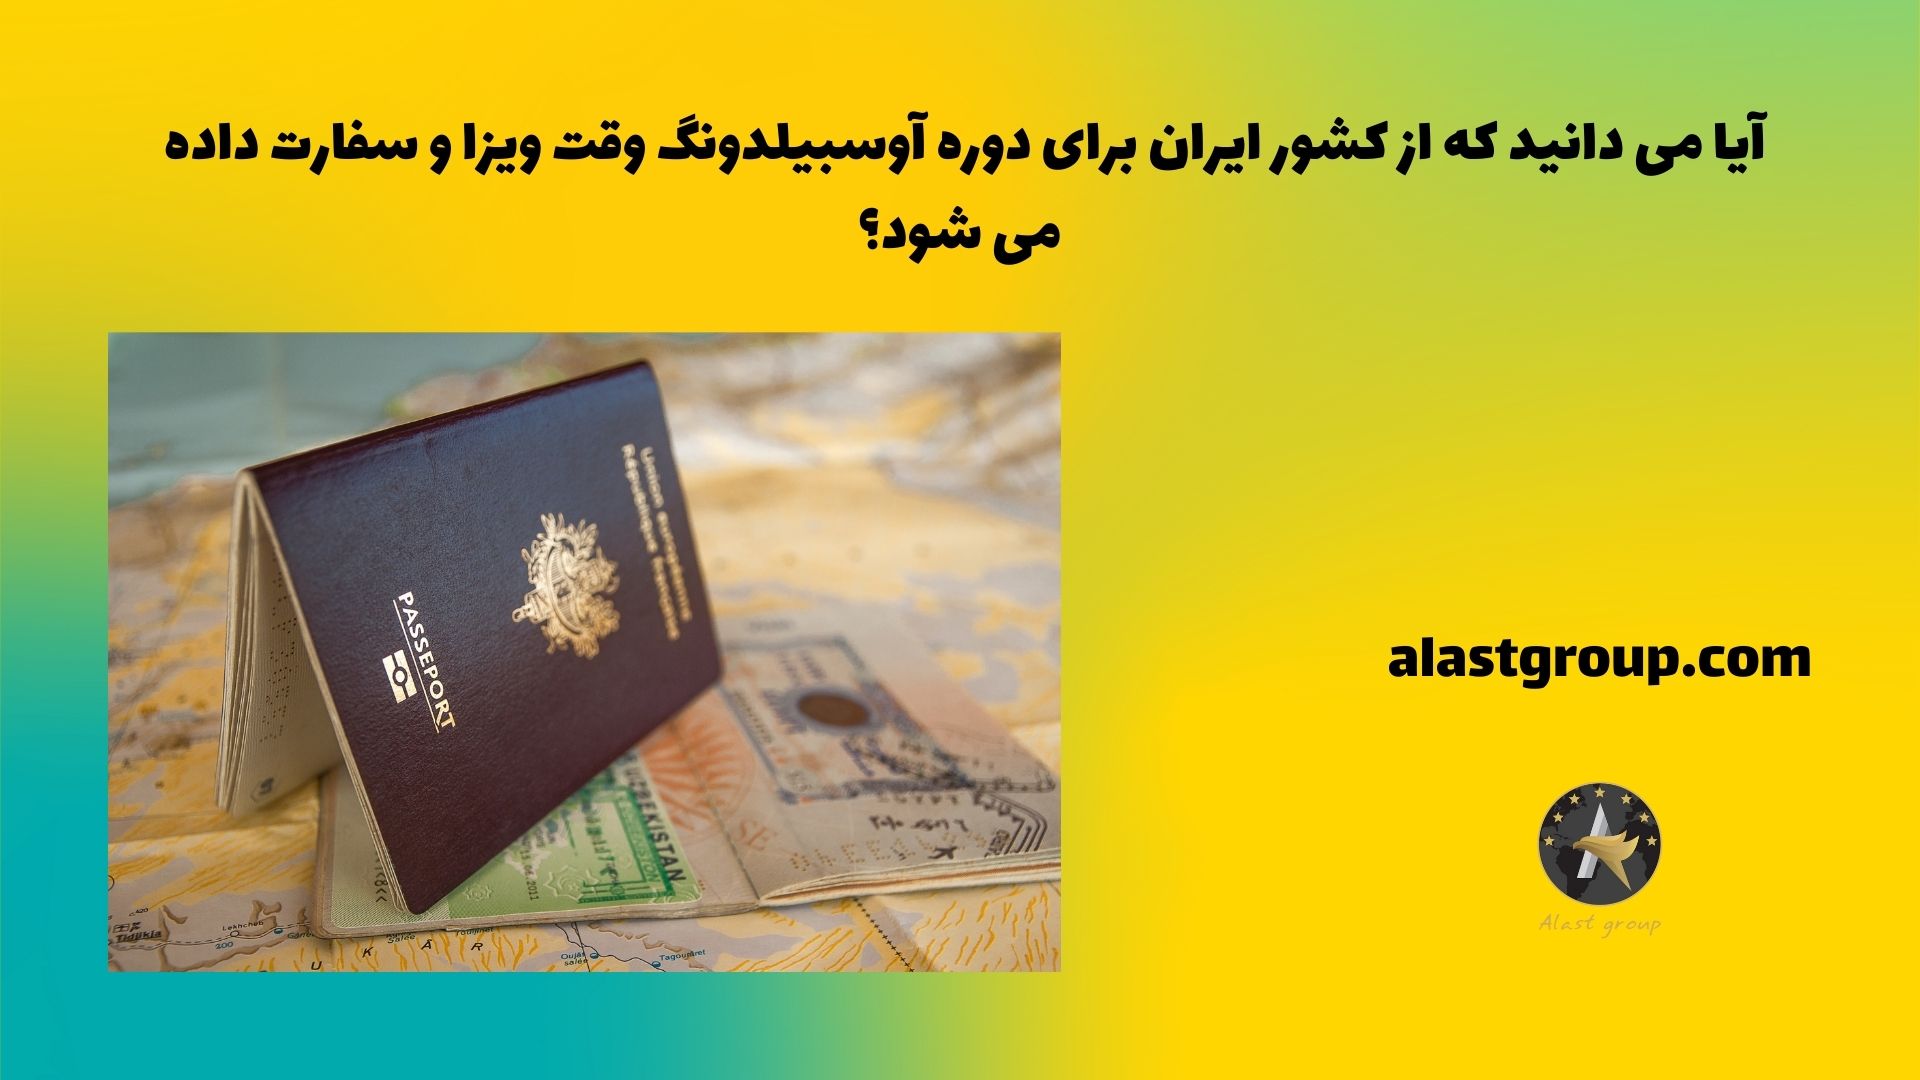 آیا می دانید که از کشور ایران برای دوره آوسبیلدونگ وقت ویزا و سفارت داده می شود؟